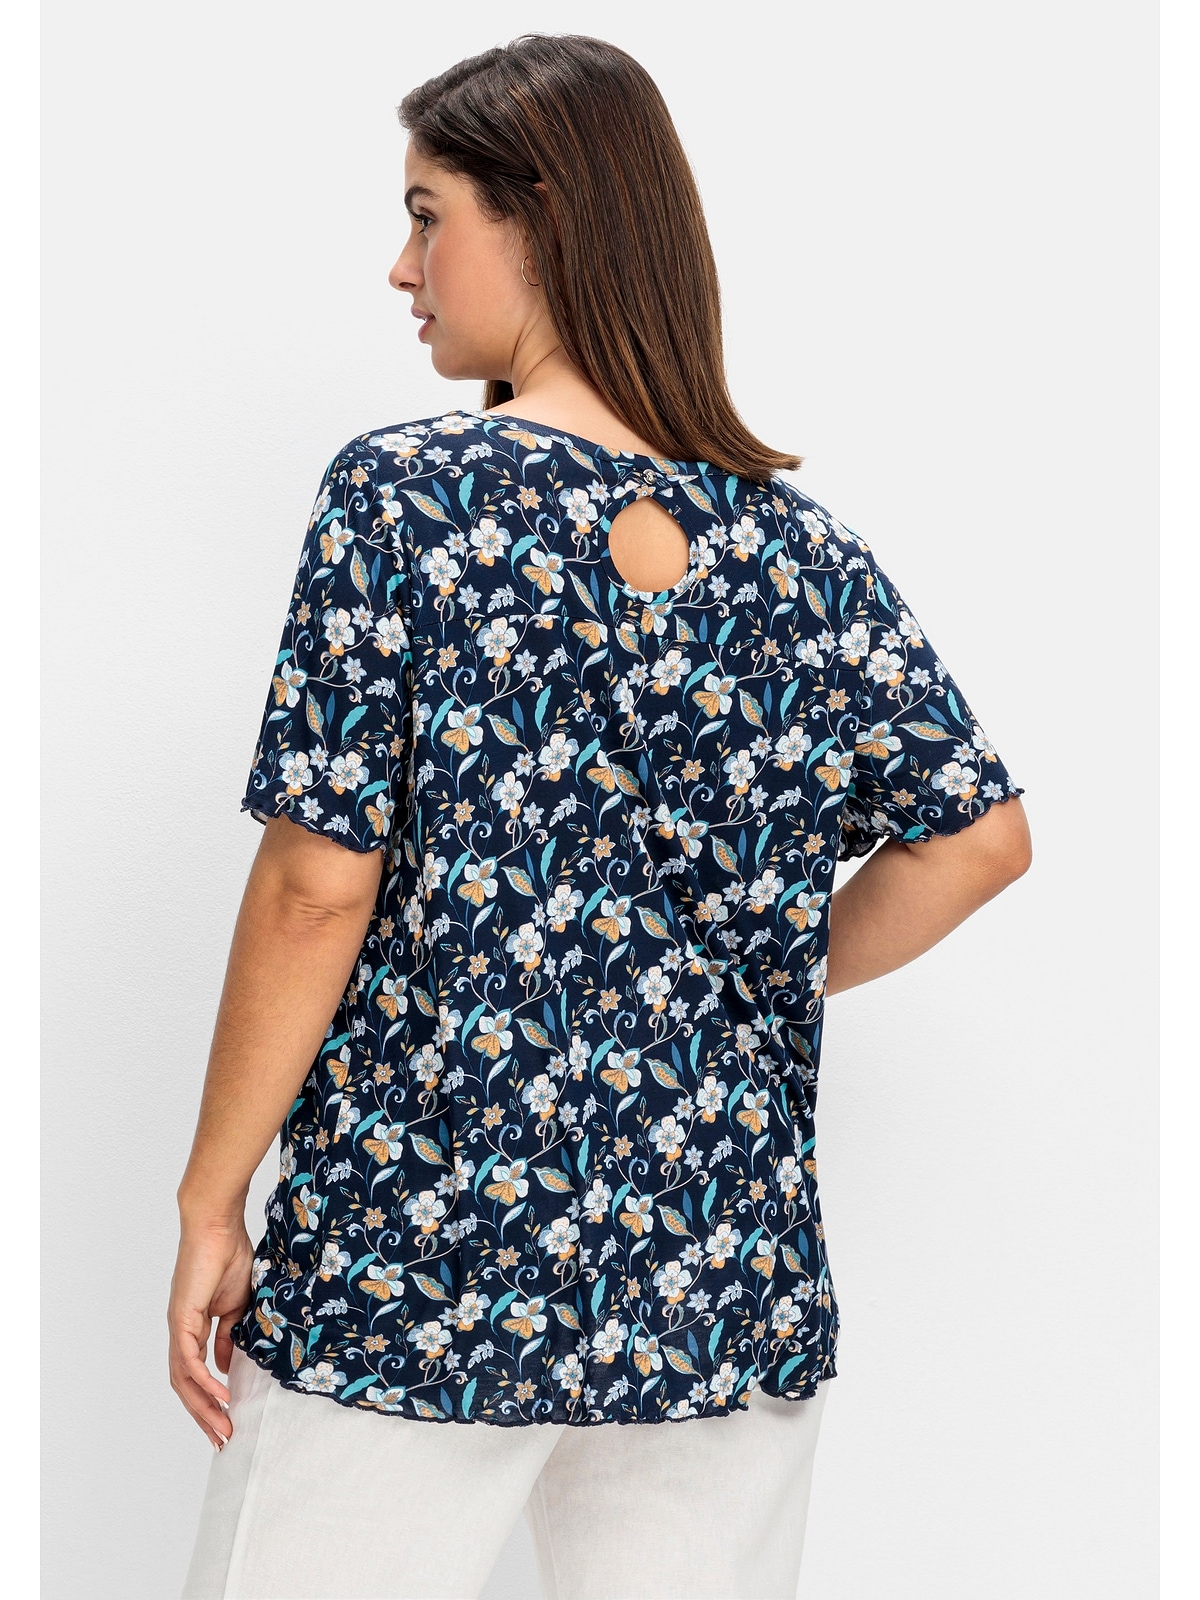 Sheego T-Shirt Große Größen mit Blumendruck und Cut-out im Rücken | T-Shirts